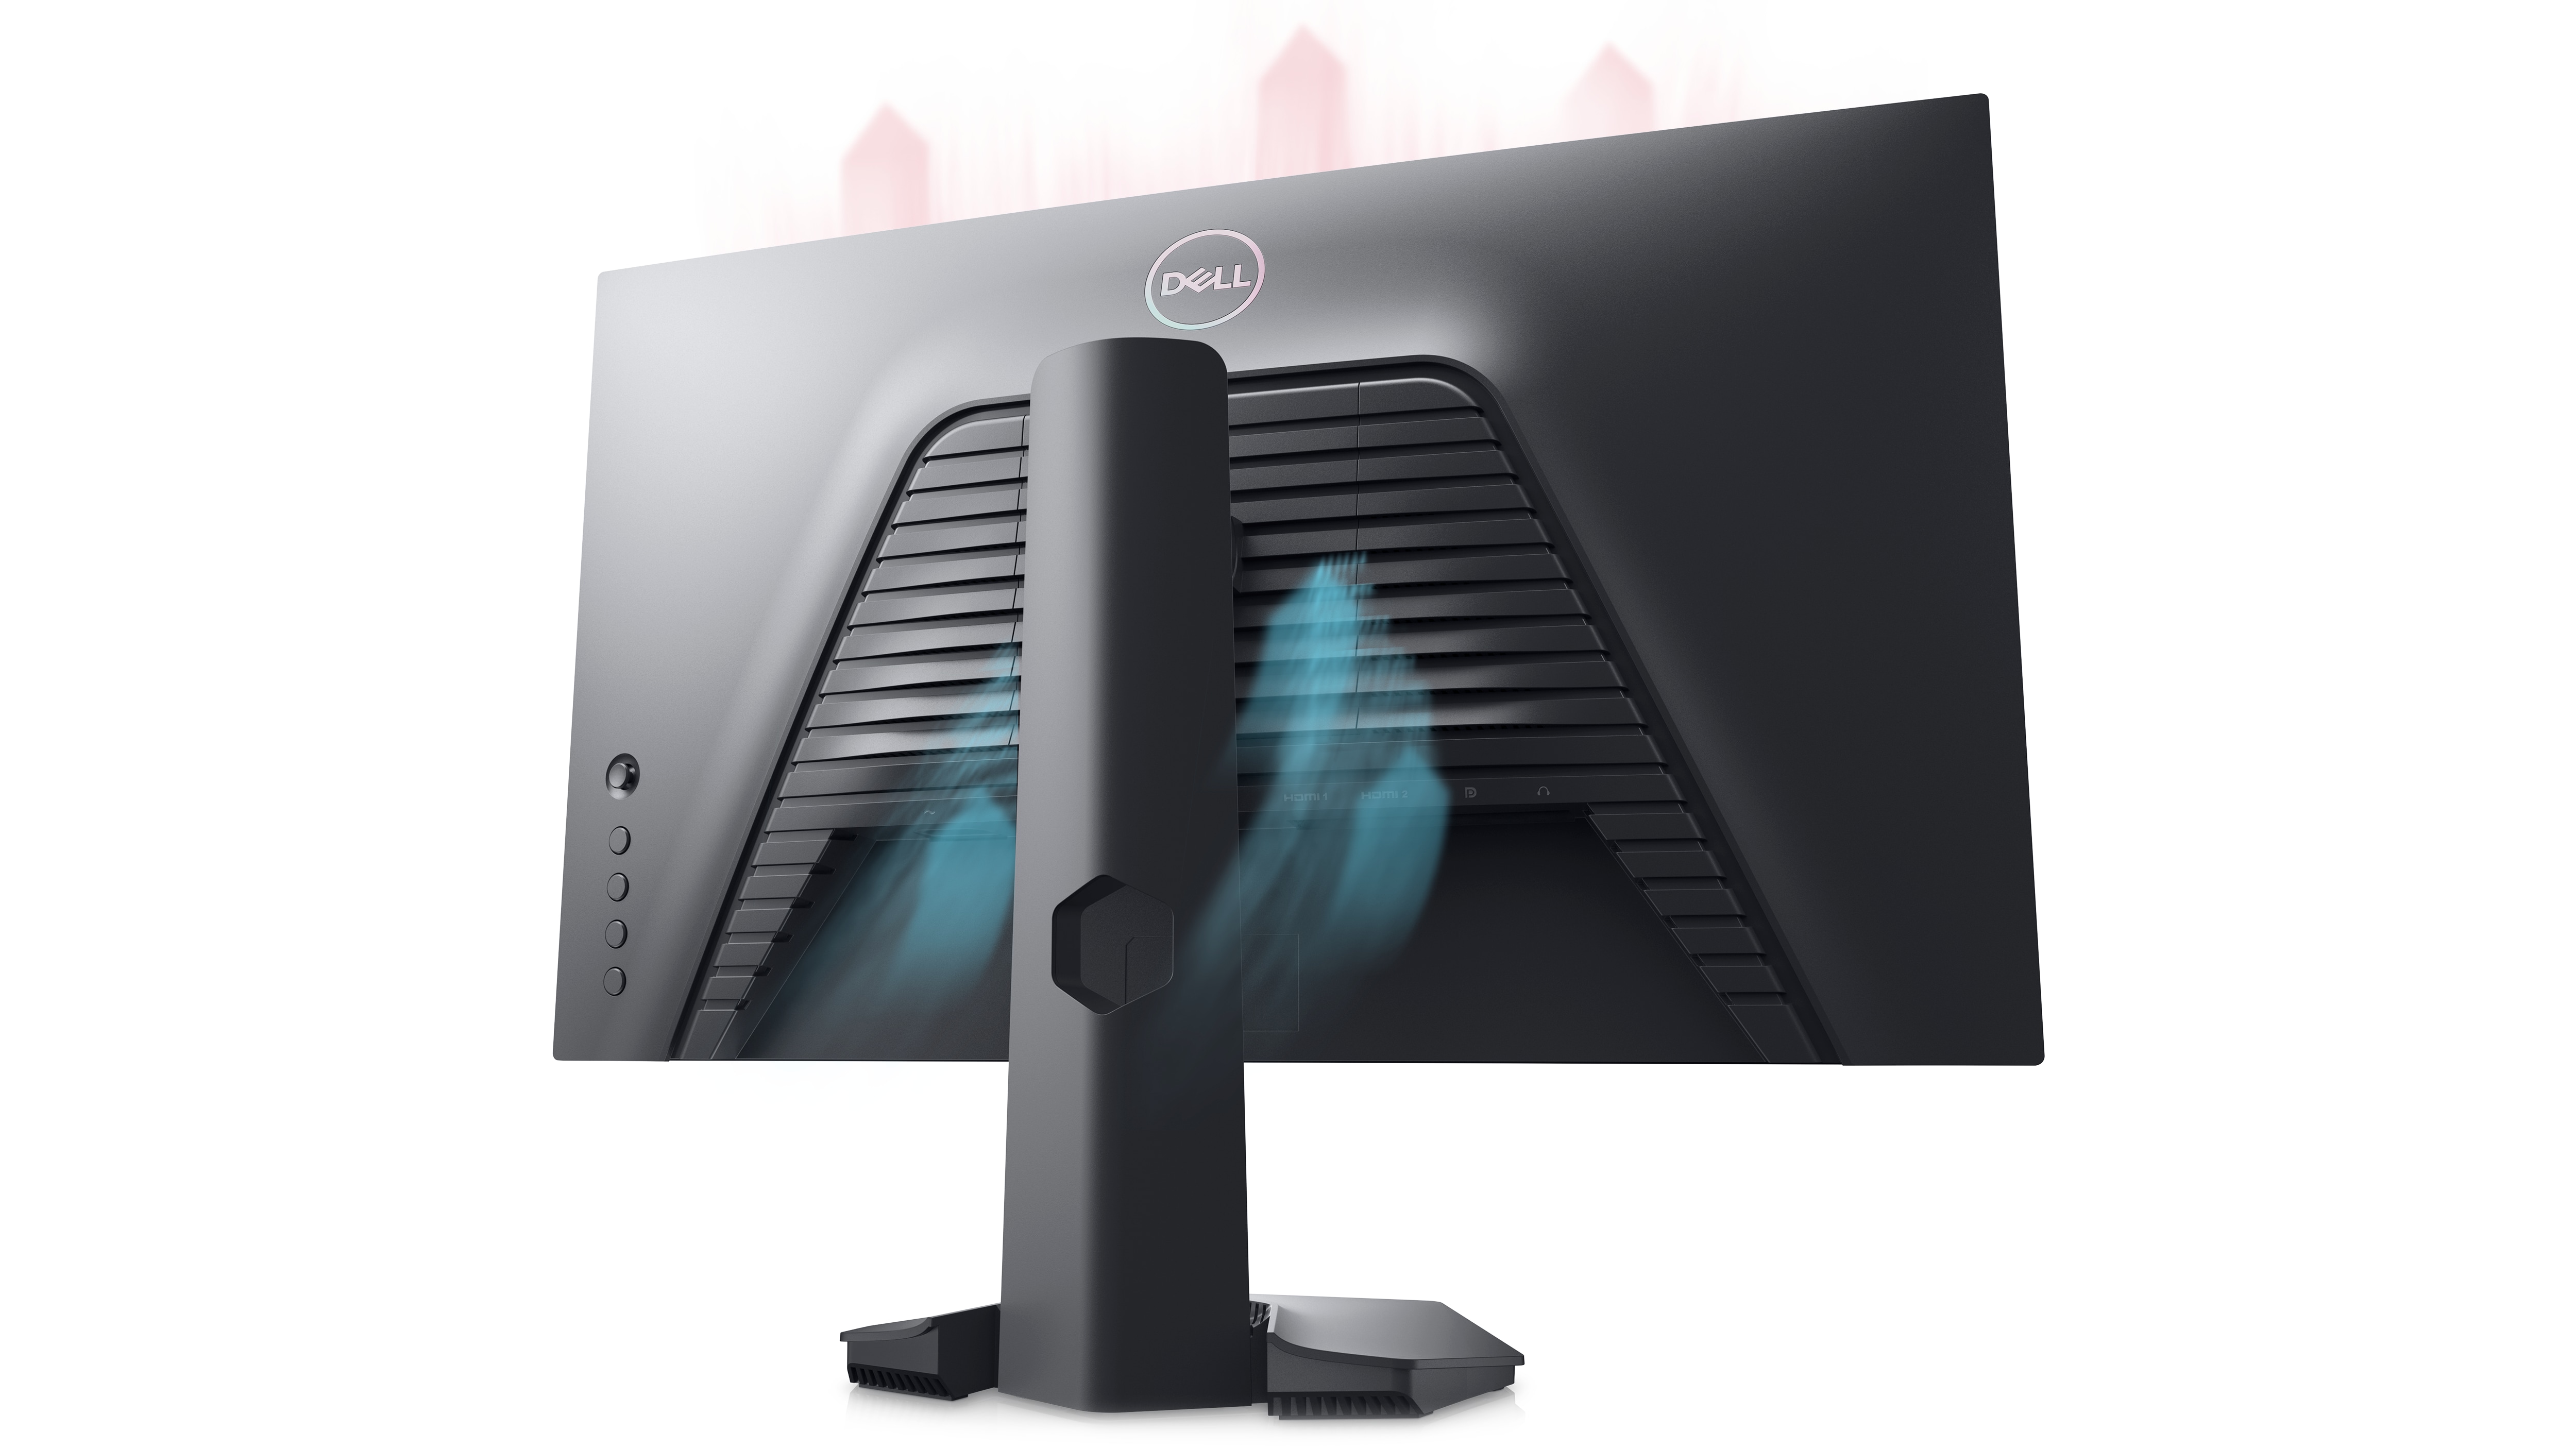 Imagem de um monitor gamer Dell G2422HS colocado de costas em um fundo branco.